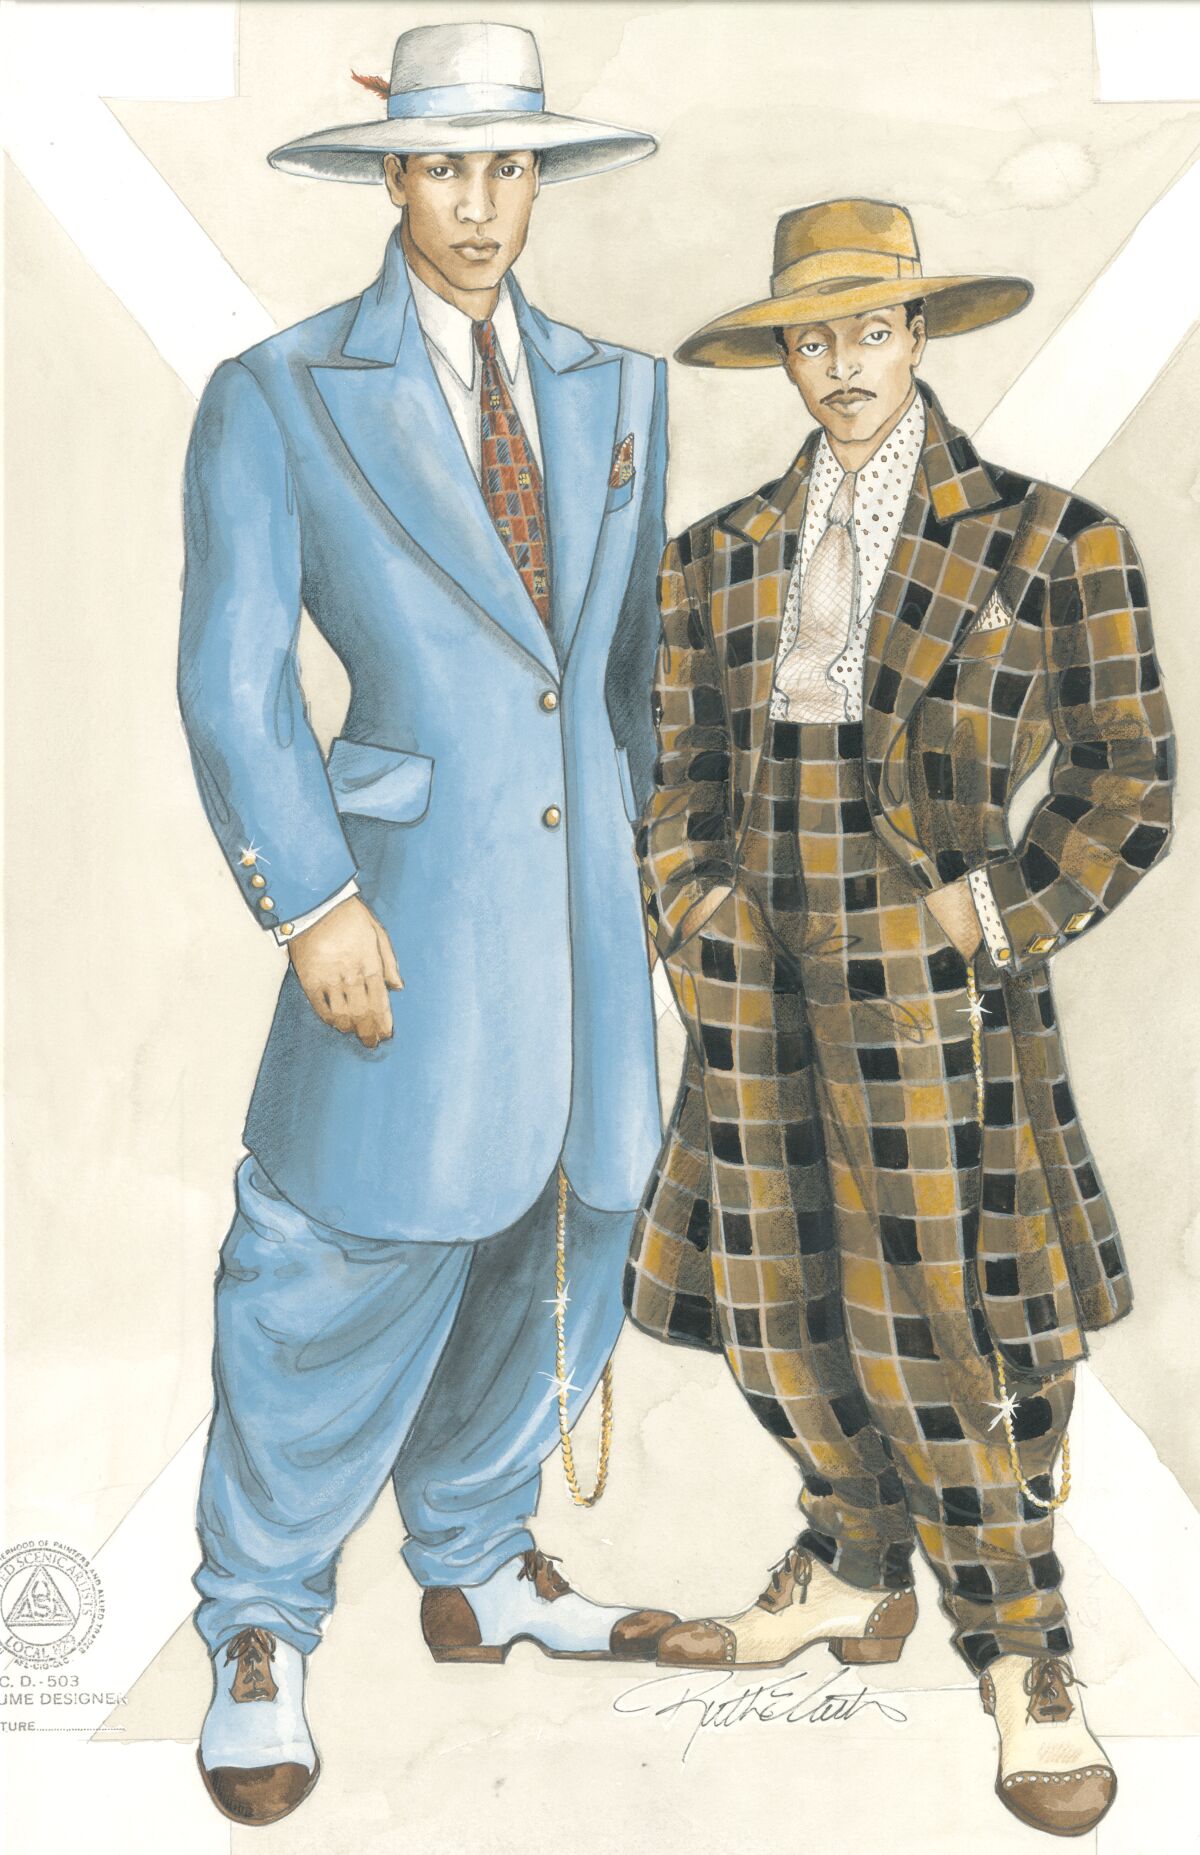 फिल्म में मैल्कम एक्स (डेनजेल वाशिंगटन) और शॉर्टी (स्पाइक ली) द्वारा पहने जाने वाले परिधानों के लिए स्केच "मैल्कम एक्स।"